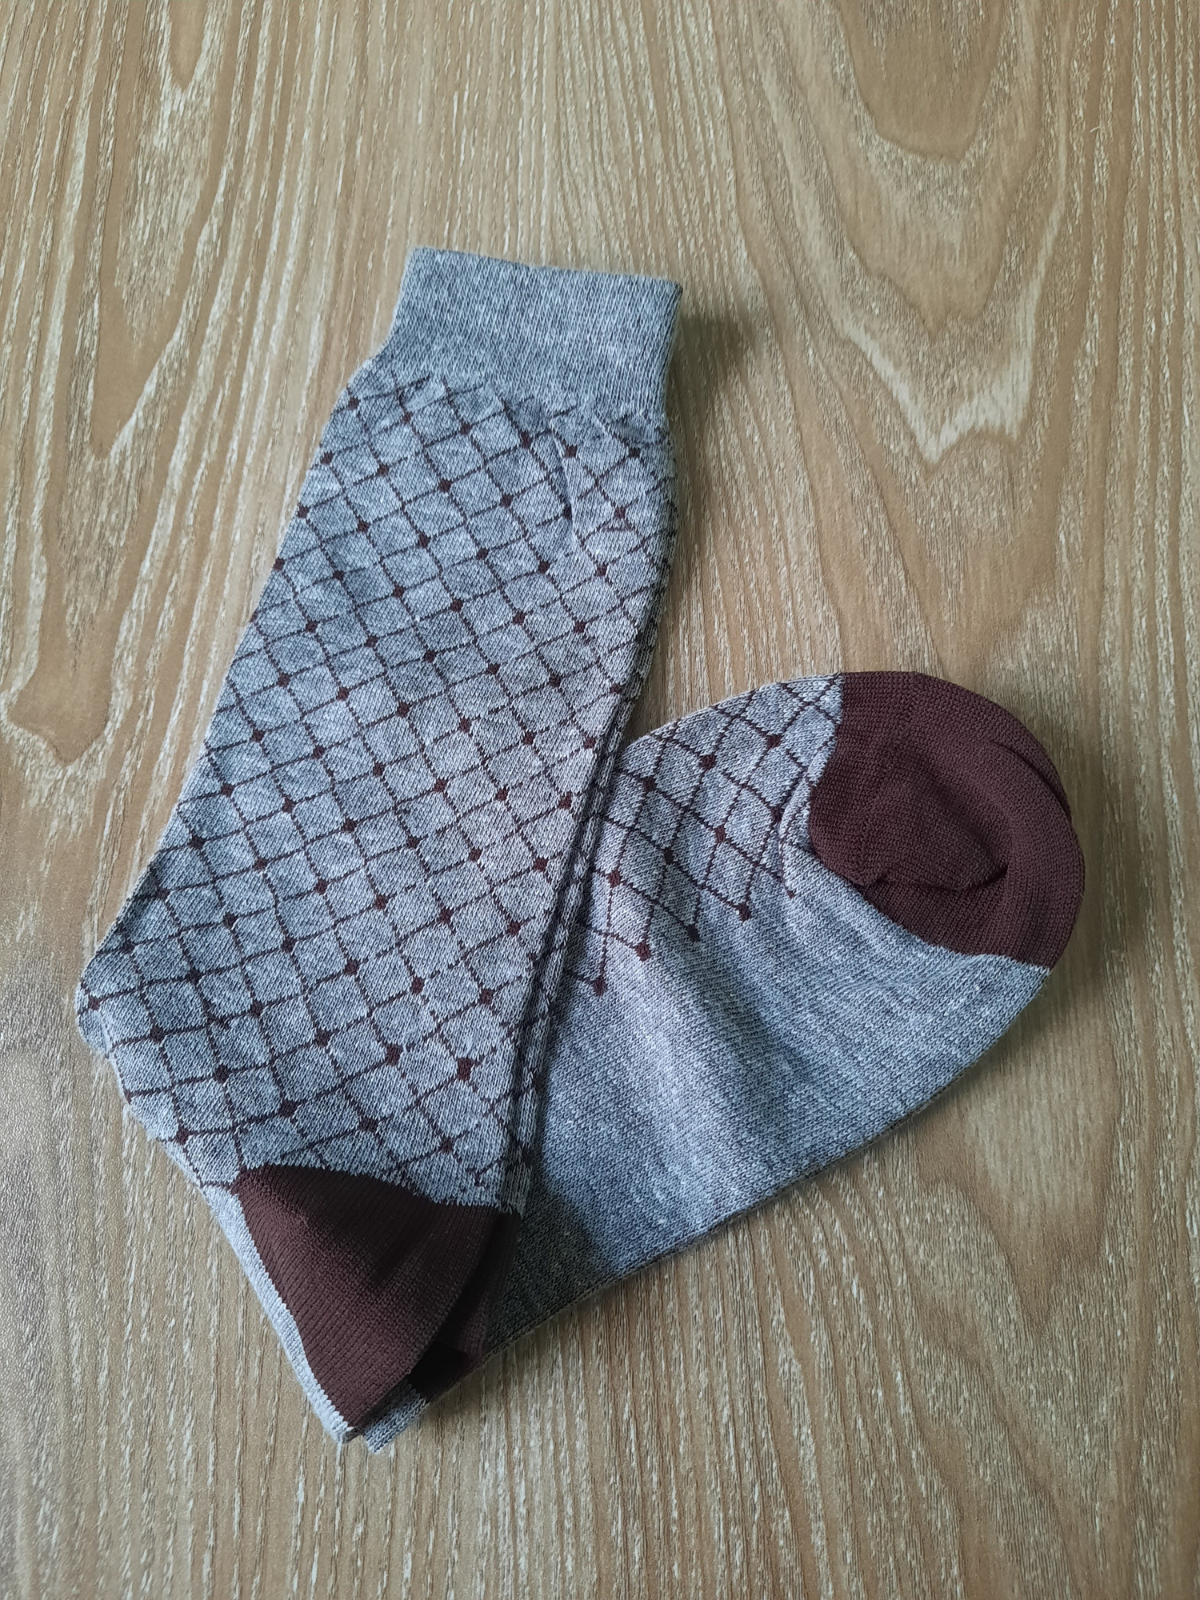 Grey & Brown Chequred Socks